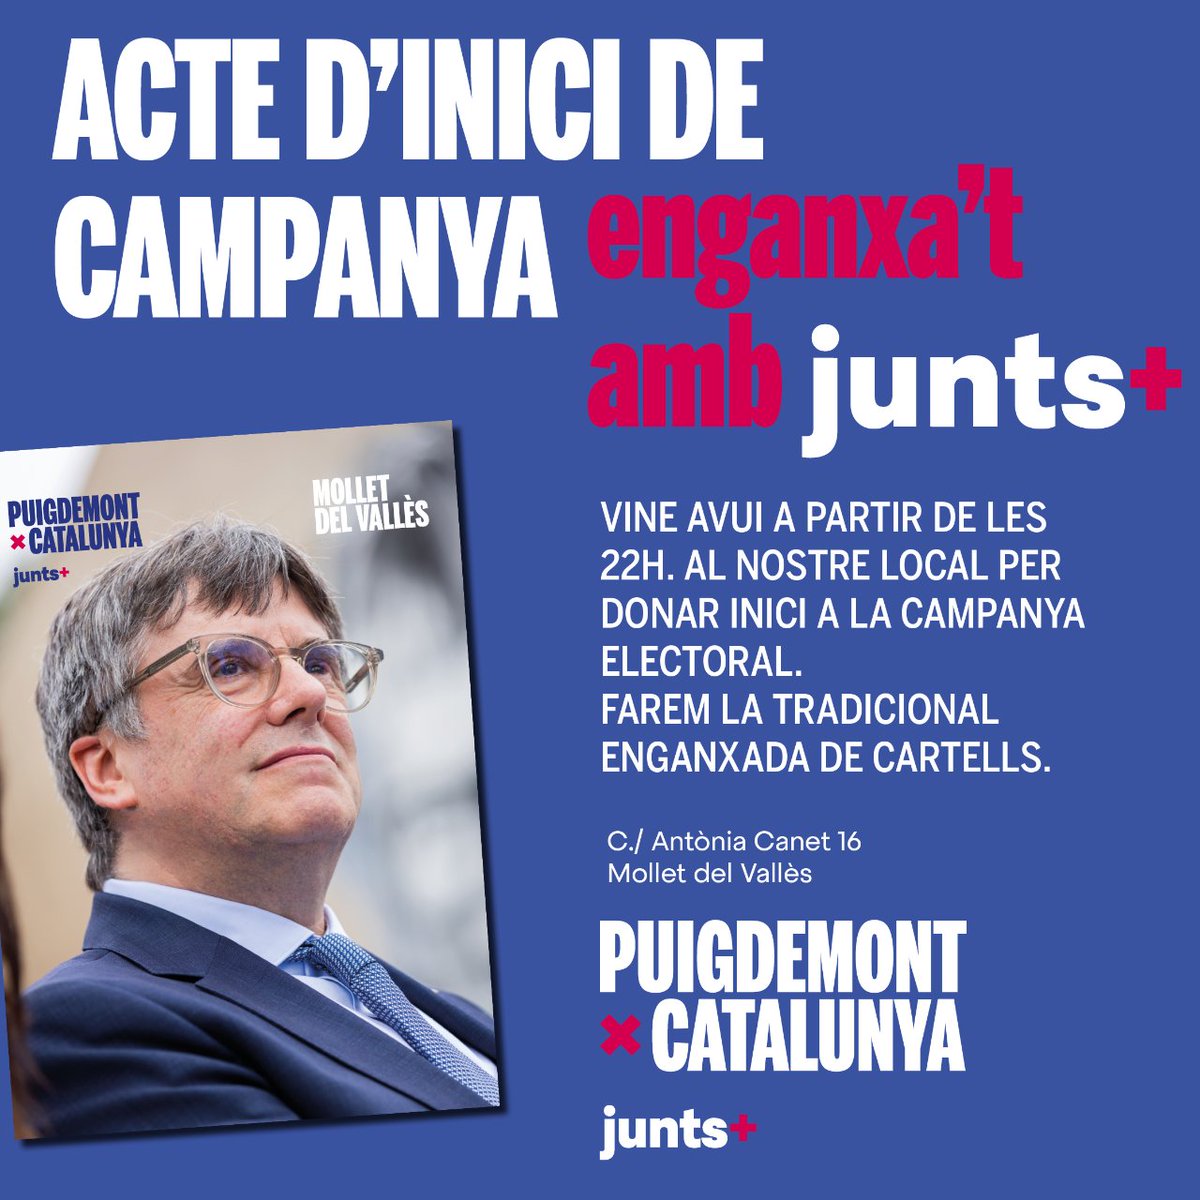 🚀 Comença la campanya amb #puigdemontpresident  a #MolletDelVallès! 🎉

🗓️ AVUI!
⏰ A partir de les 22h
📍 C/ Antònia Canet 16

Uneix-te a la tradicional enganxada de cartells i dona suport a la nostra iniciativa.
#IniciCampanya #JuntsPerCatalunya